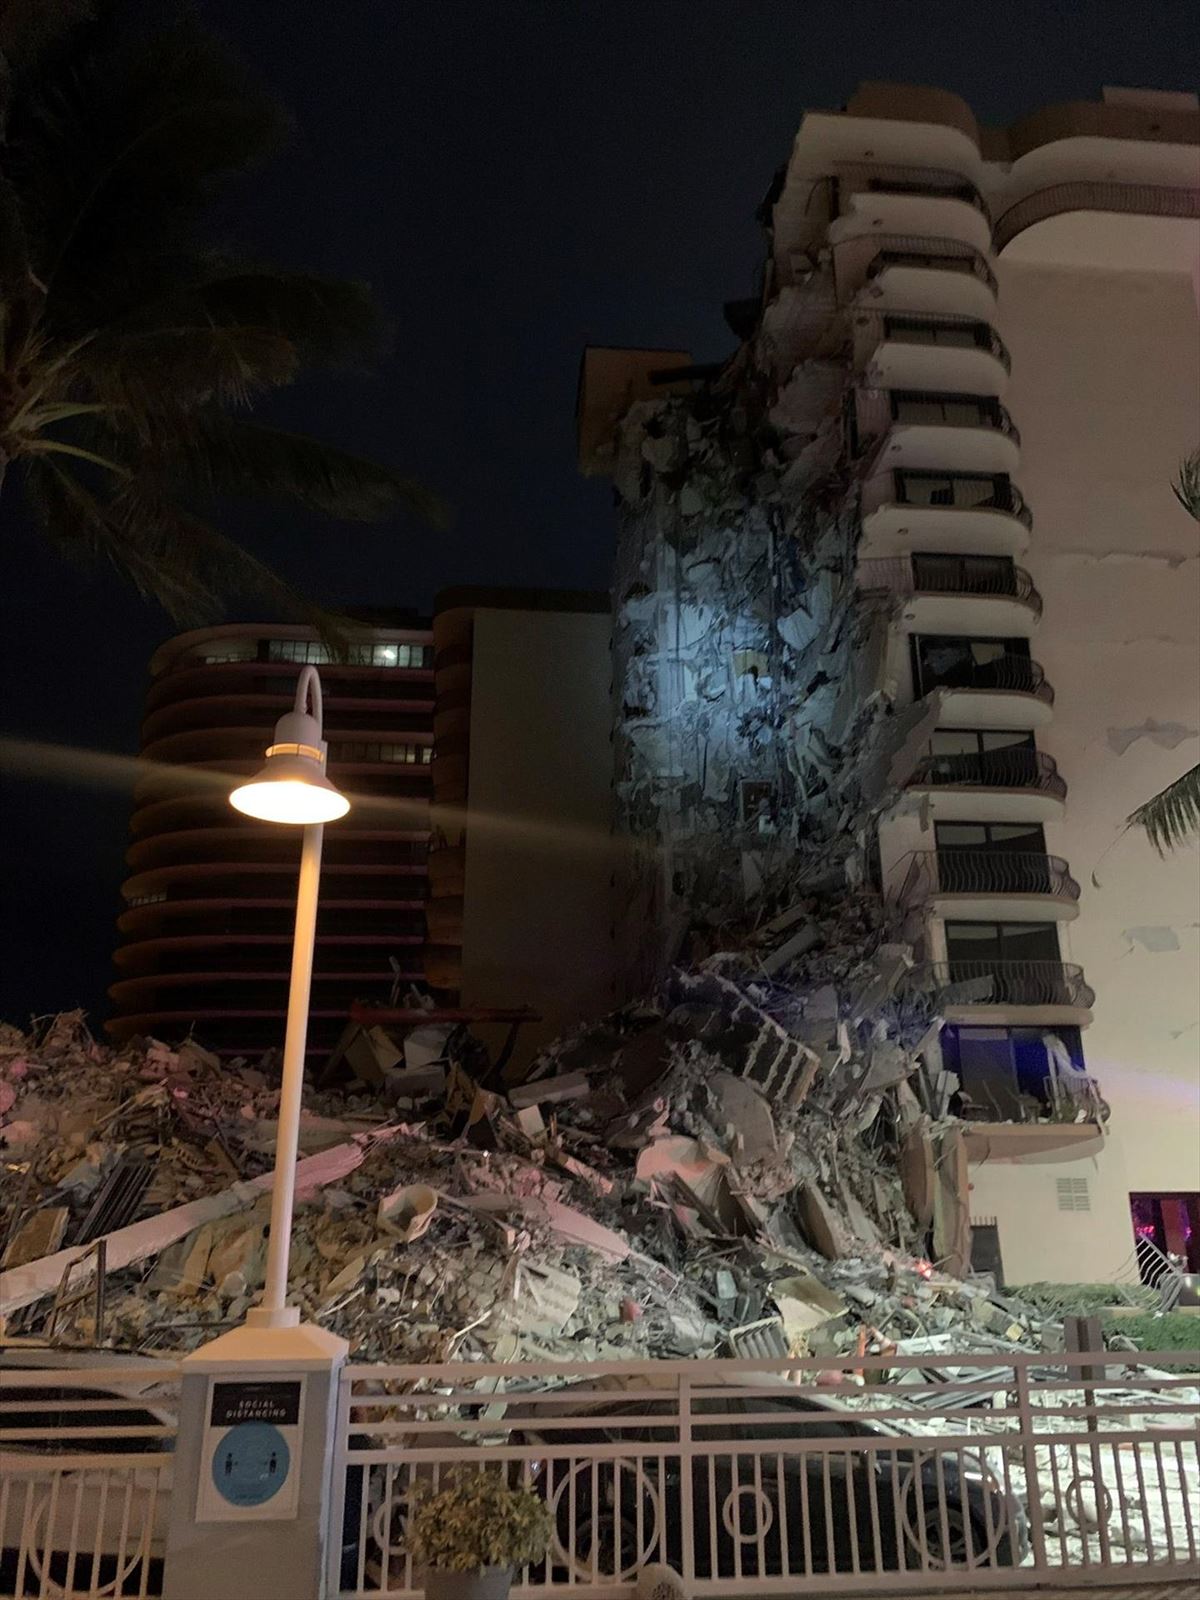 99 personas desapararecidas tras el derrumbe de un edificio en Miami Beach